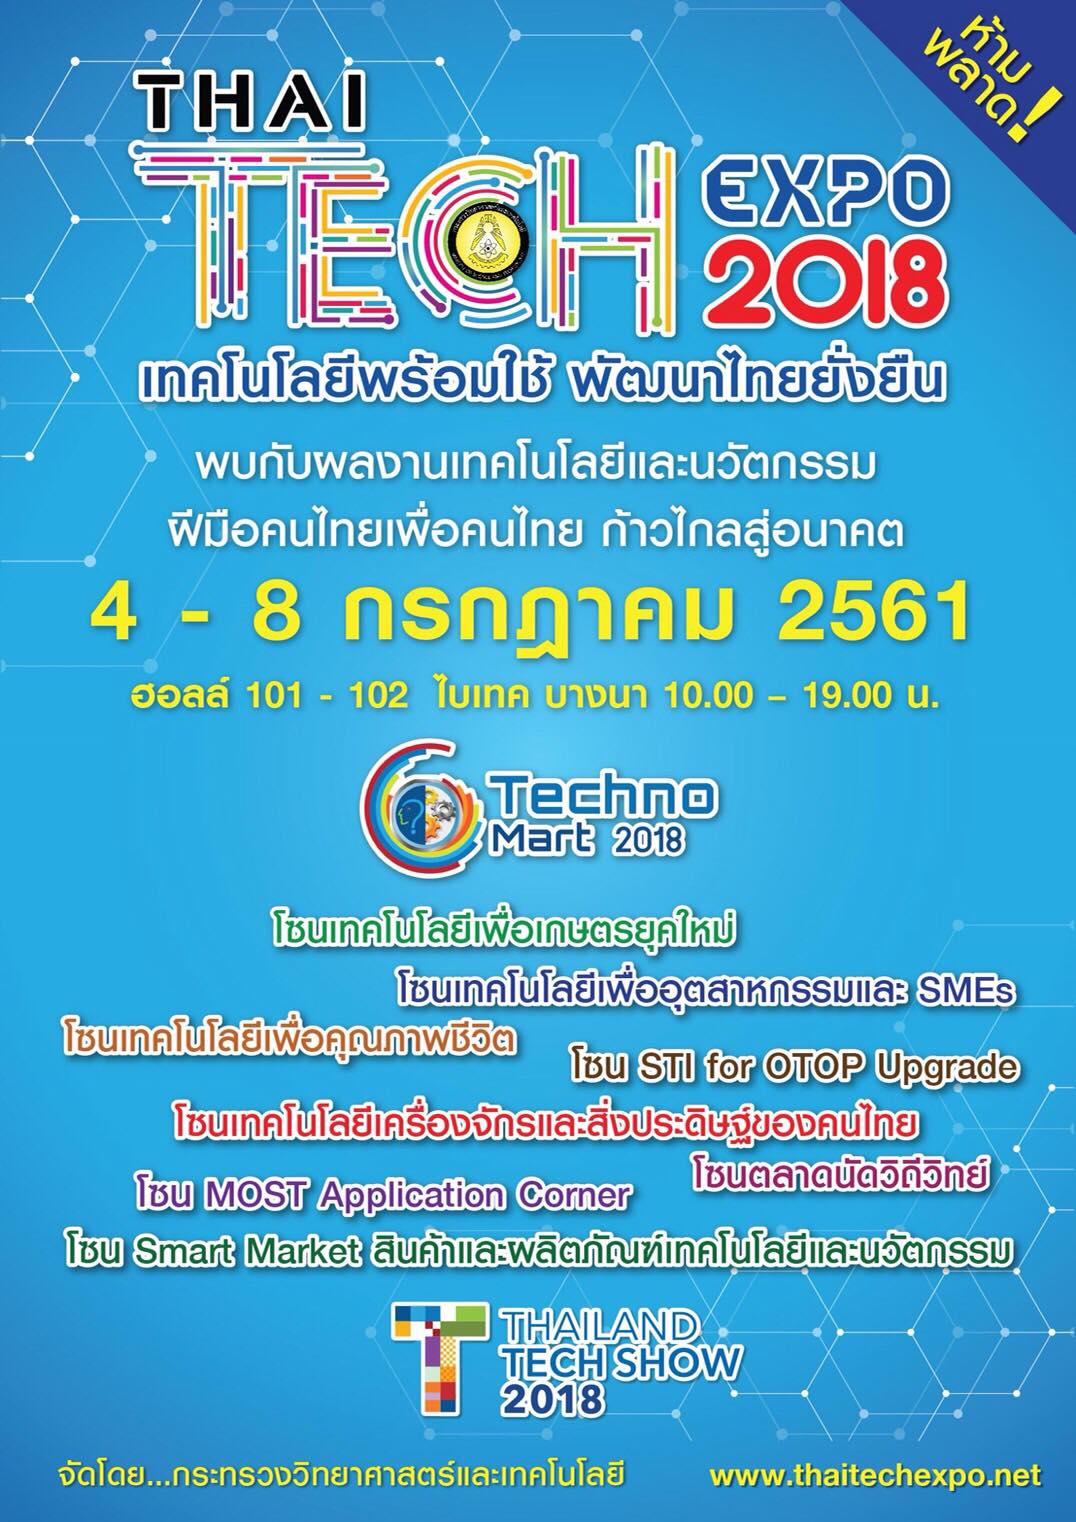 THAI TECH EXPO 2018